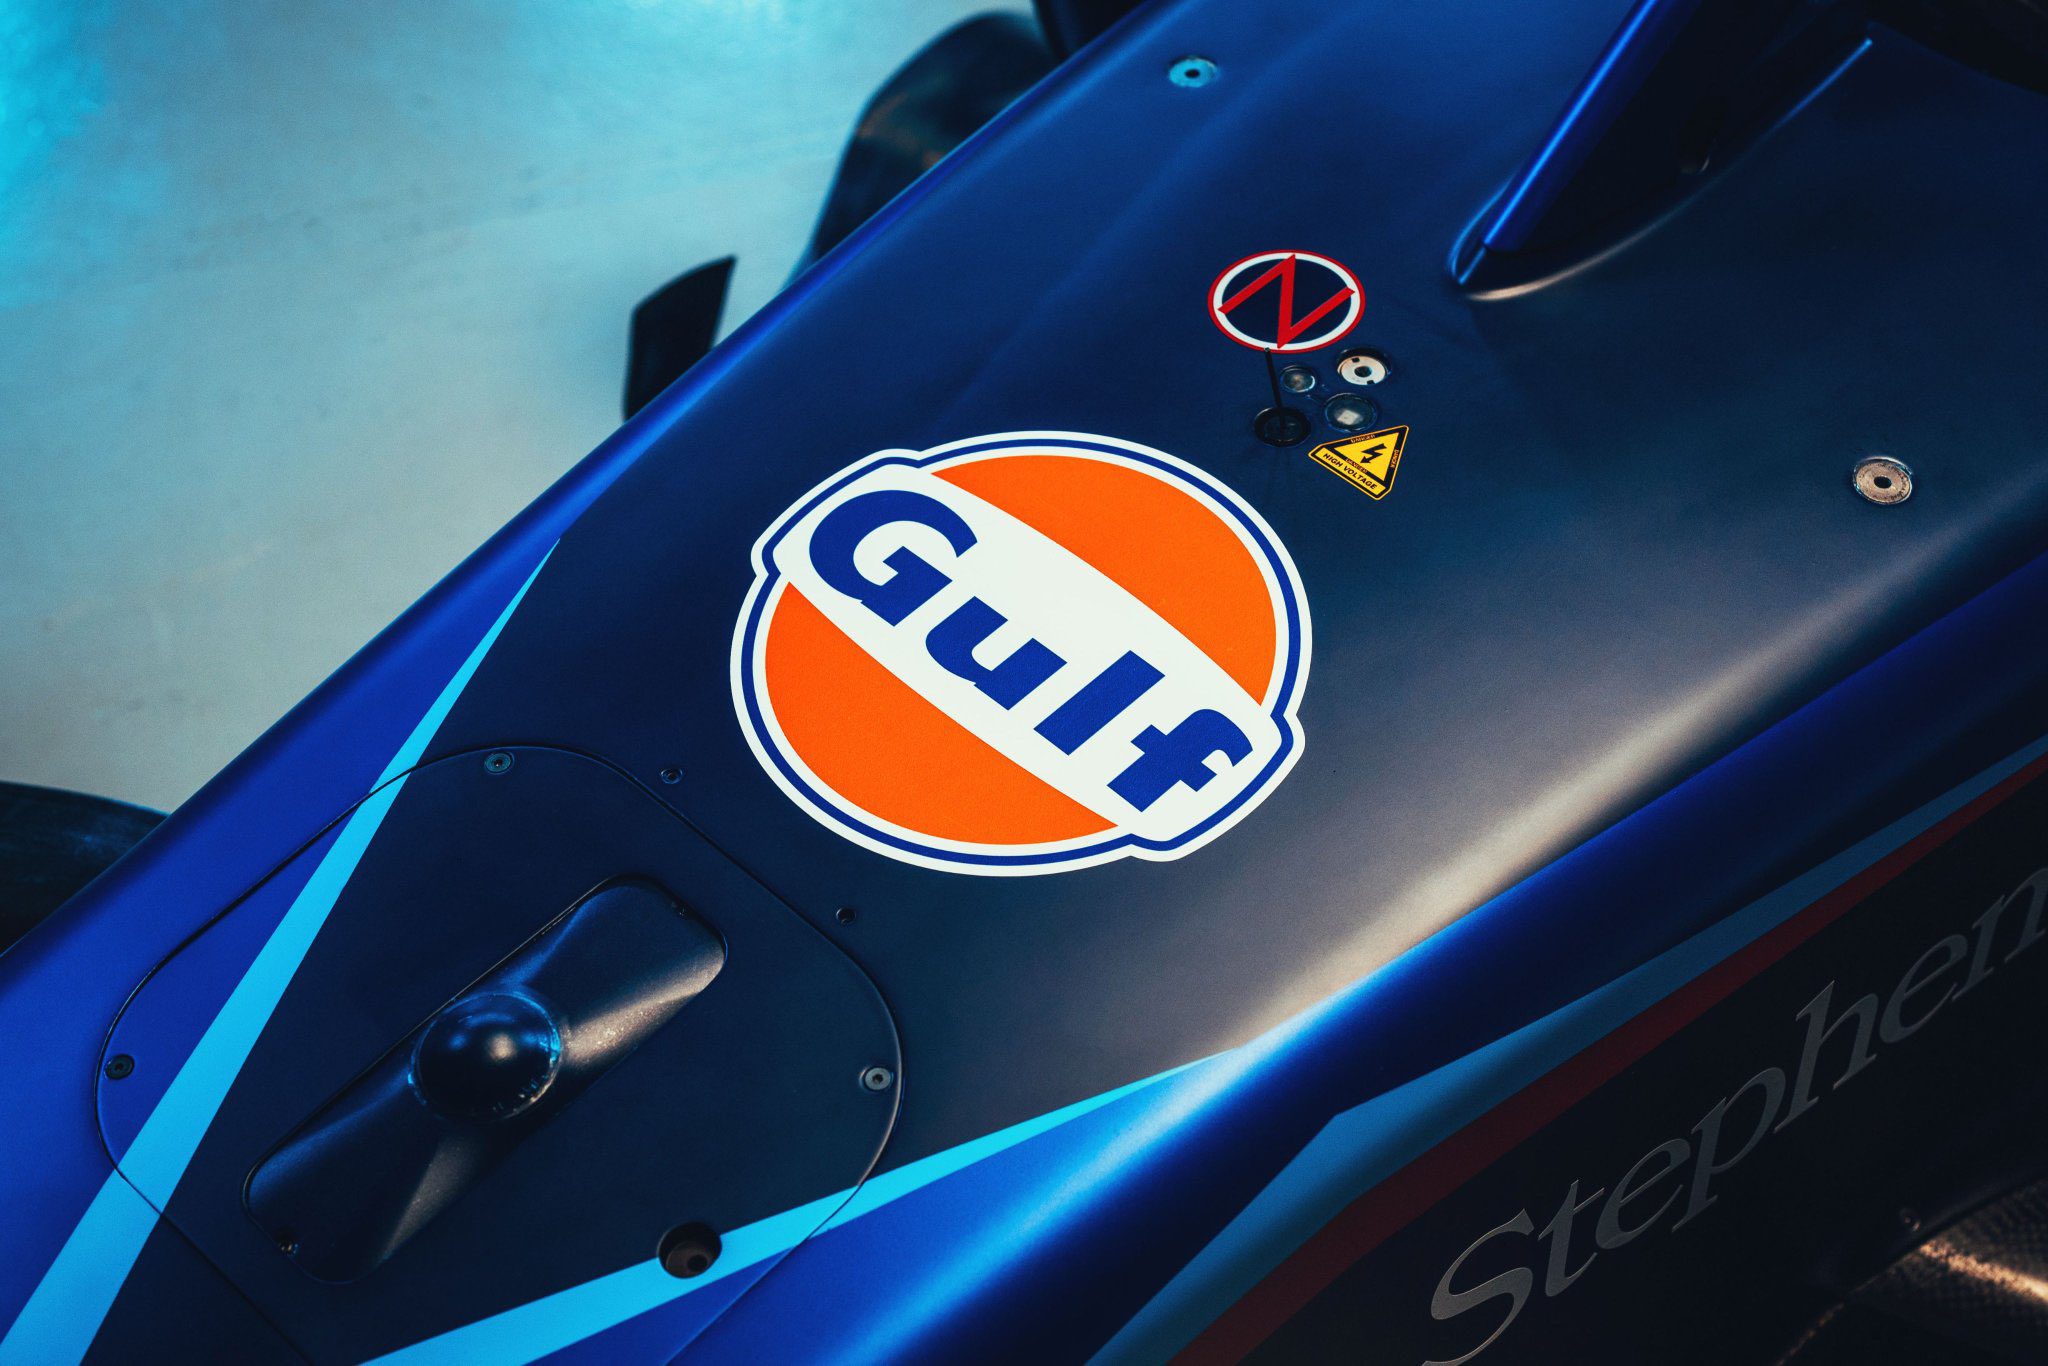 Williams apresenta cores do FW45 e traz patrocínio Gulf para Fórmula 1 2023